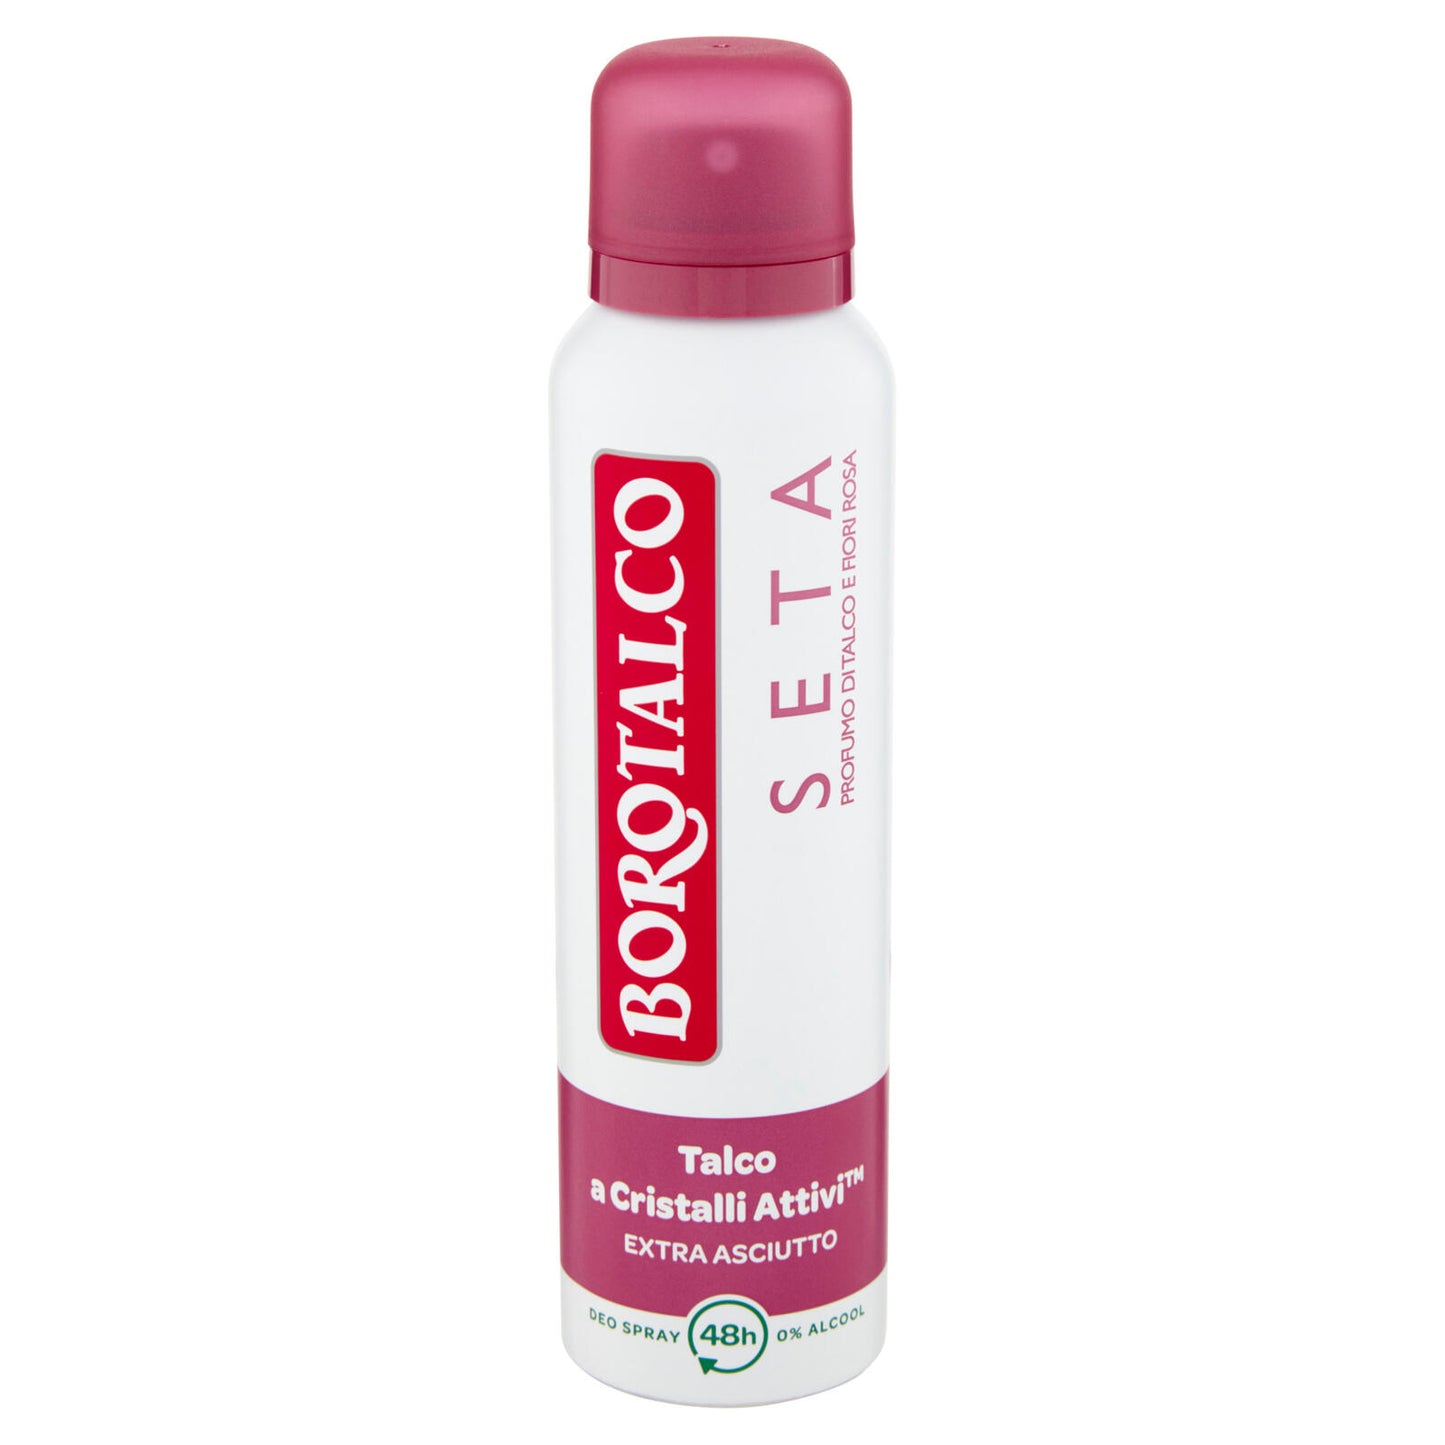 Borotalco Seta Profumo di Talco e Fiori Rosa Deo Spray 150 ml